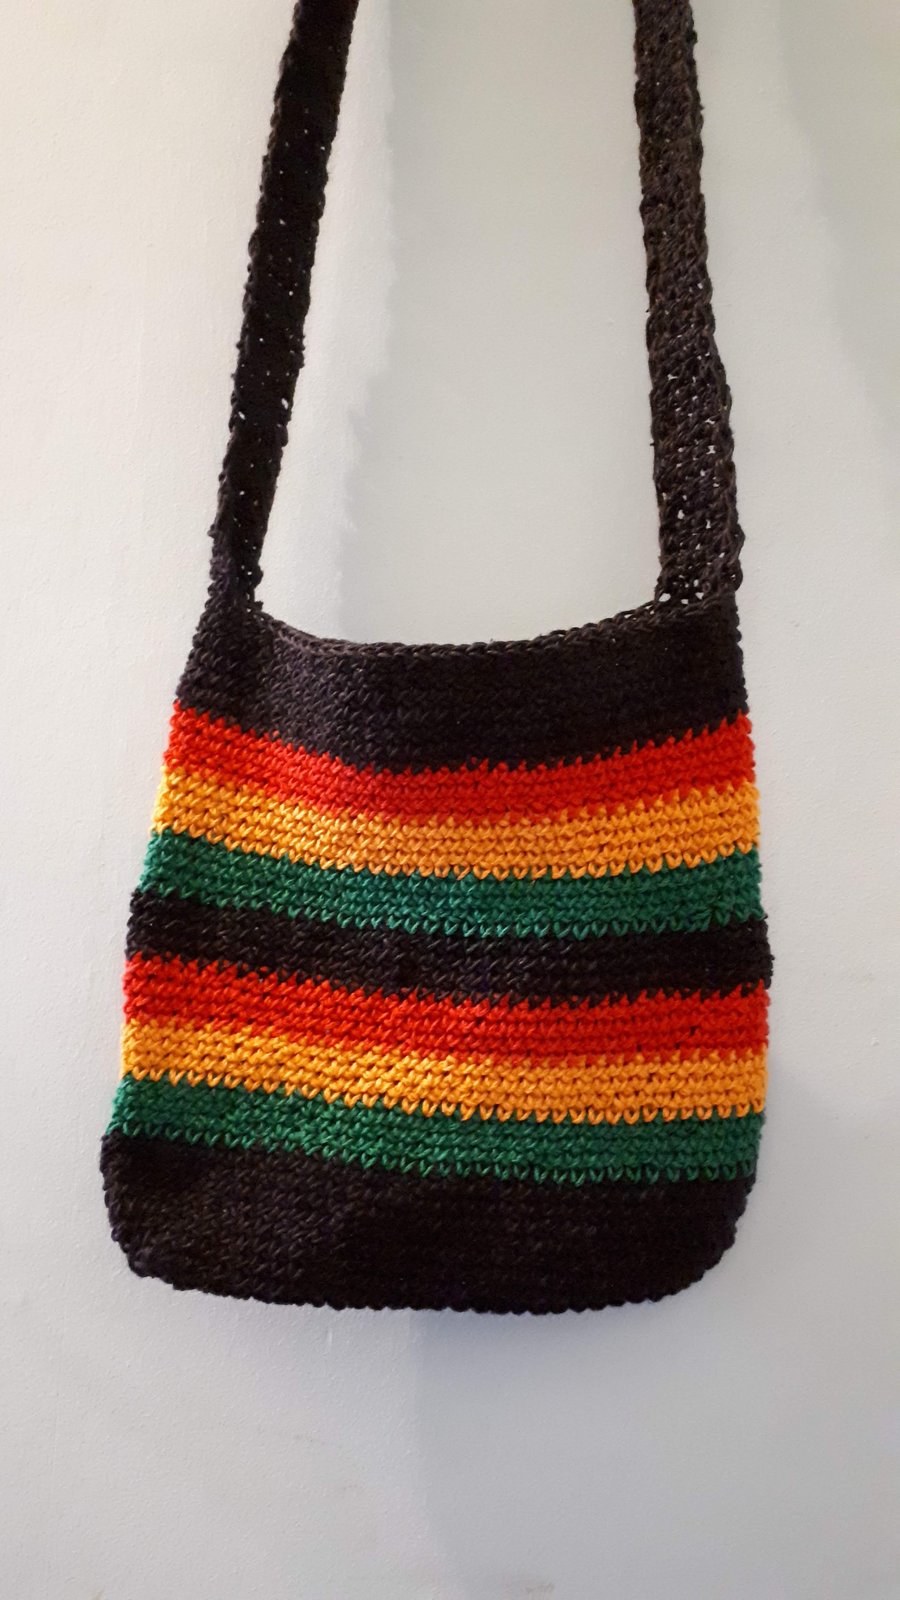  Crocheted Rasta stripe bag reggae Jamaica hemp yarn handbag shoulder strap Sal 